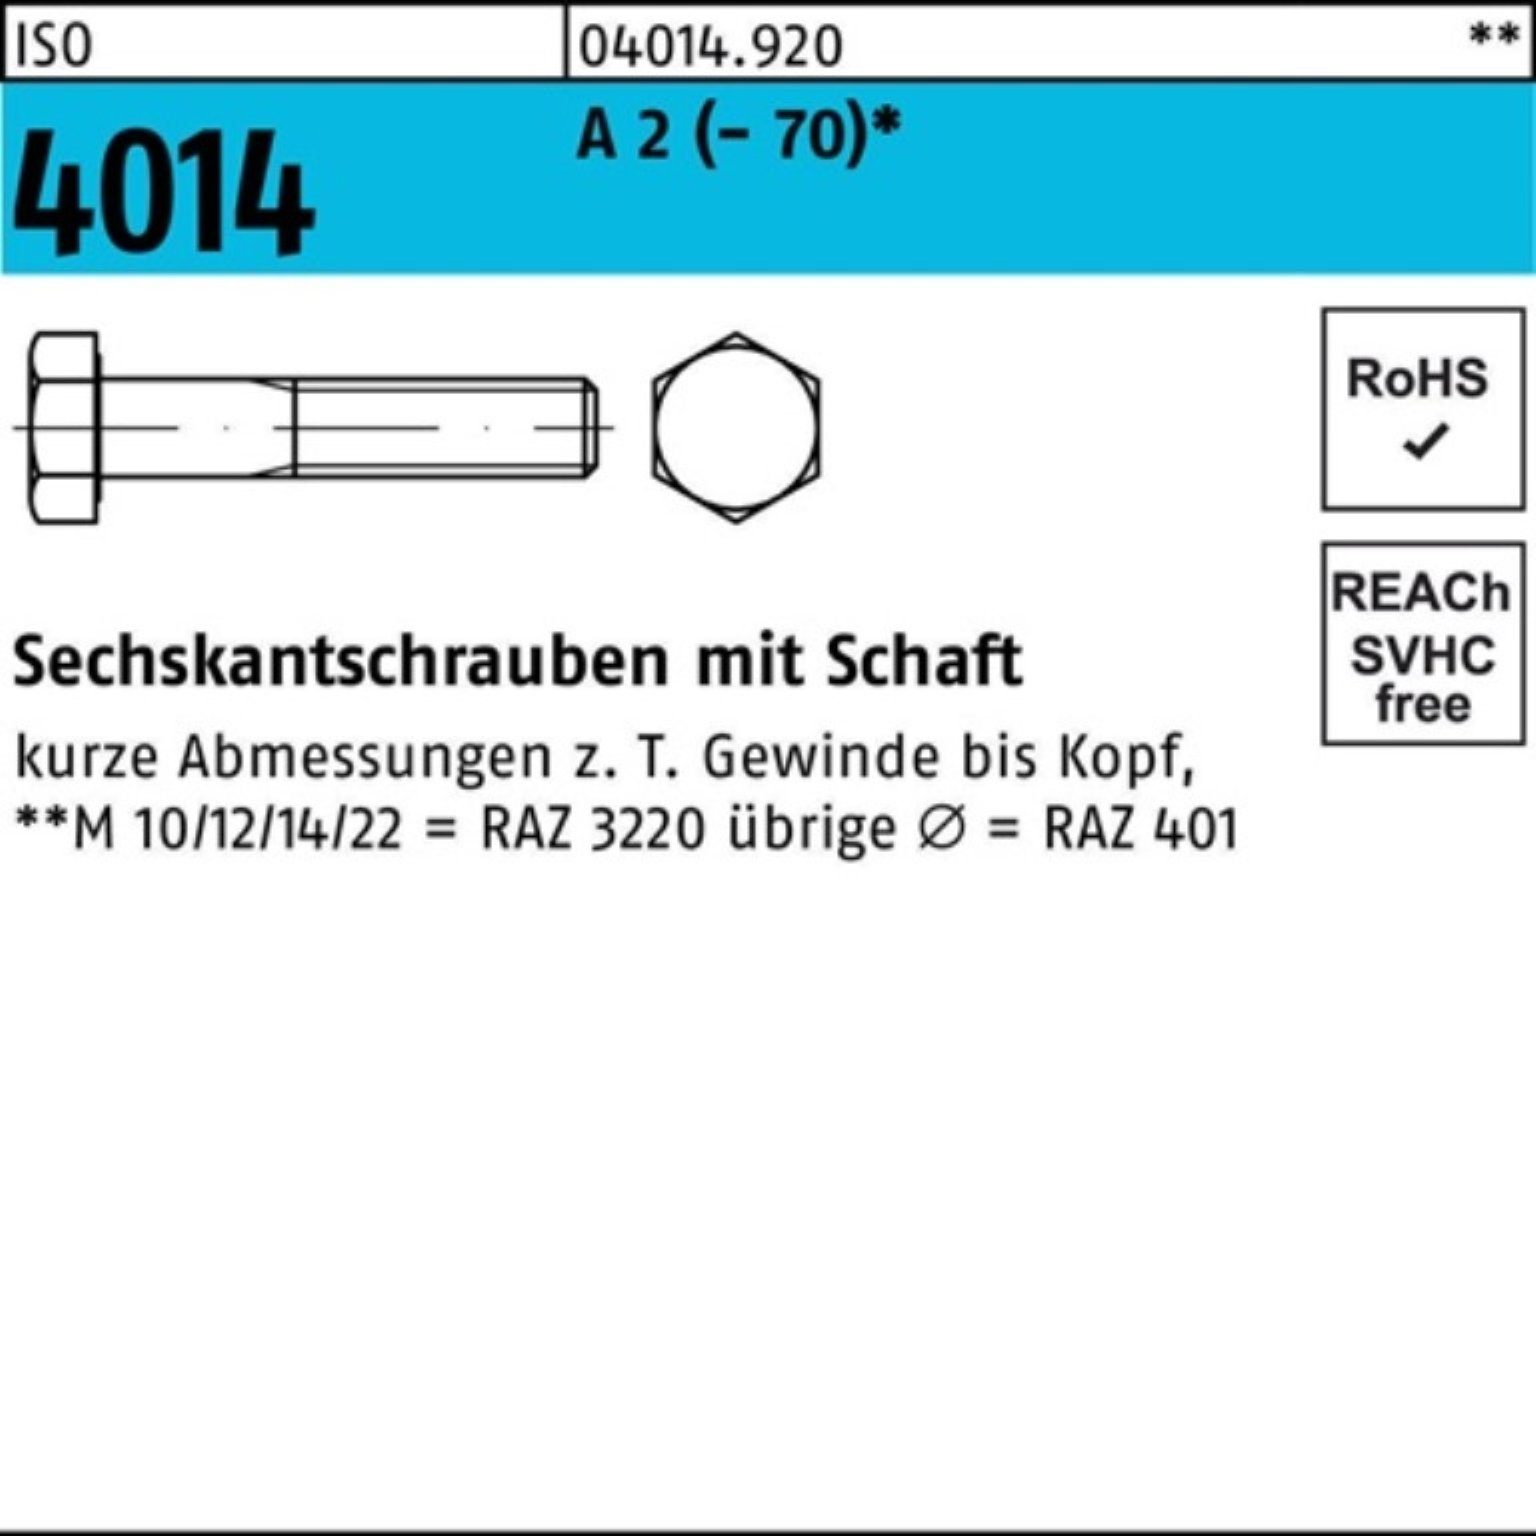 Bufab Sechskantschraube 100er Pack Sechskantschraube ISO 4014 Schaft M12x 250 A 2 (70) 1 St